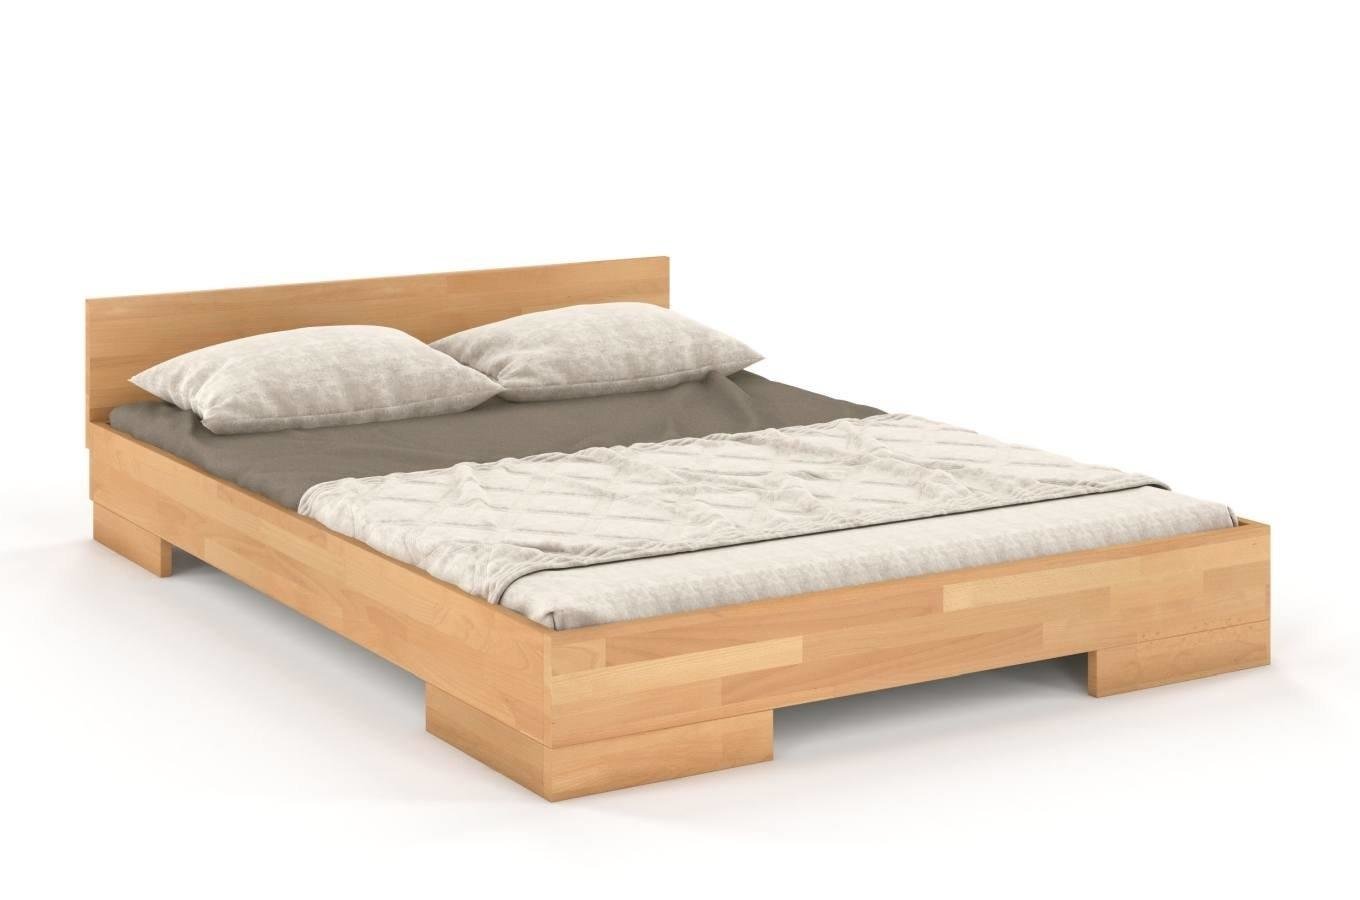 Łóżko drewniane bukowe Skandica SPECTRUM Long (długość + 20 cm) / 200x220 cm, kolor naturalny